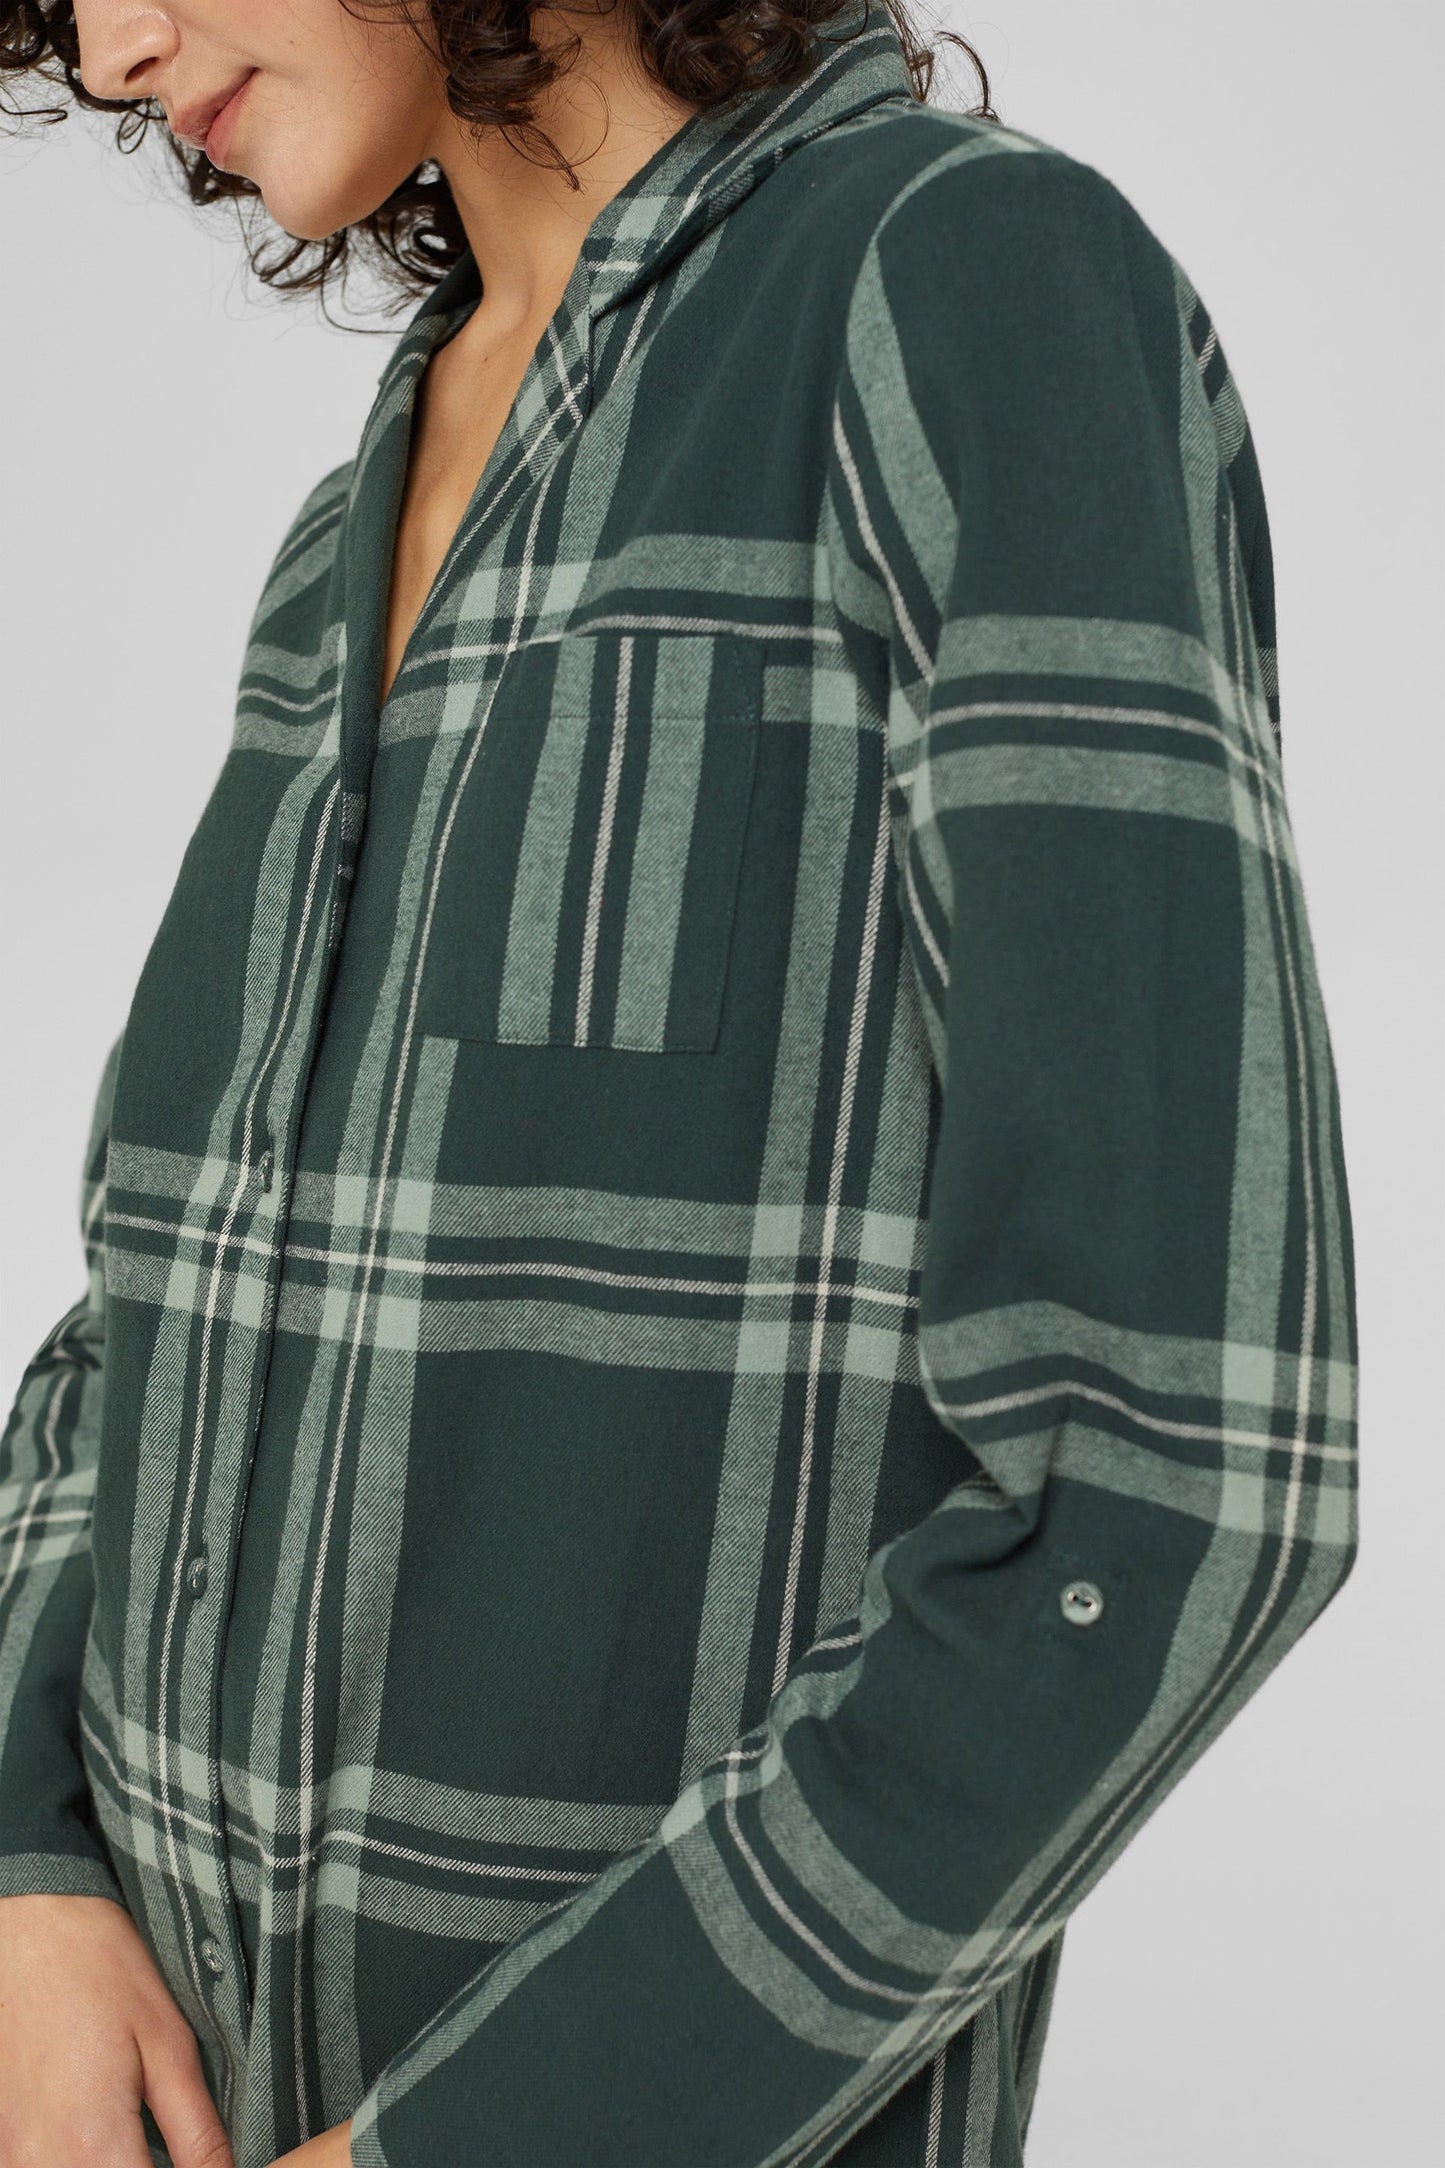 Esprit flannelen nachthemd doorknoop met kraag - 101EF1Y315 - Teal Green